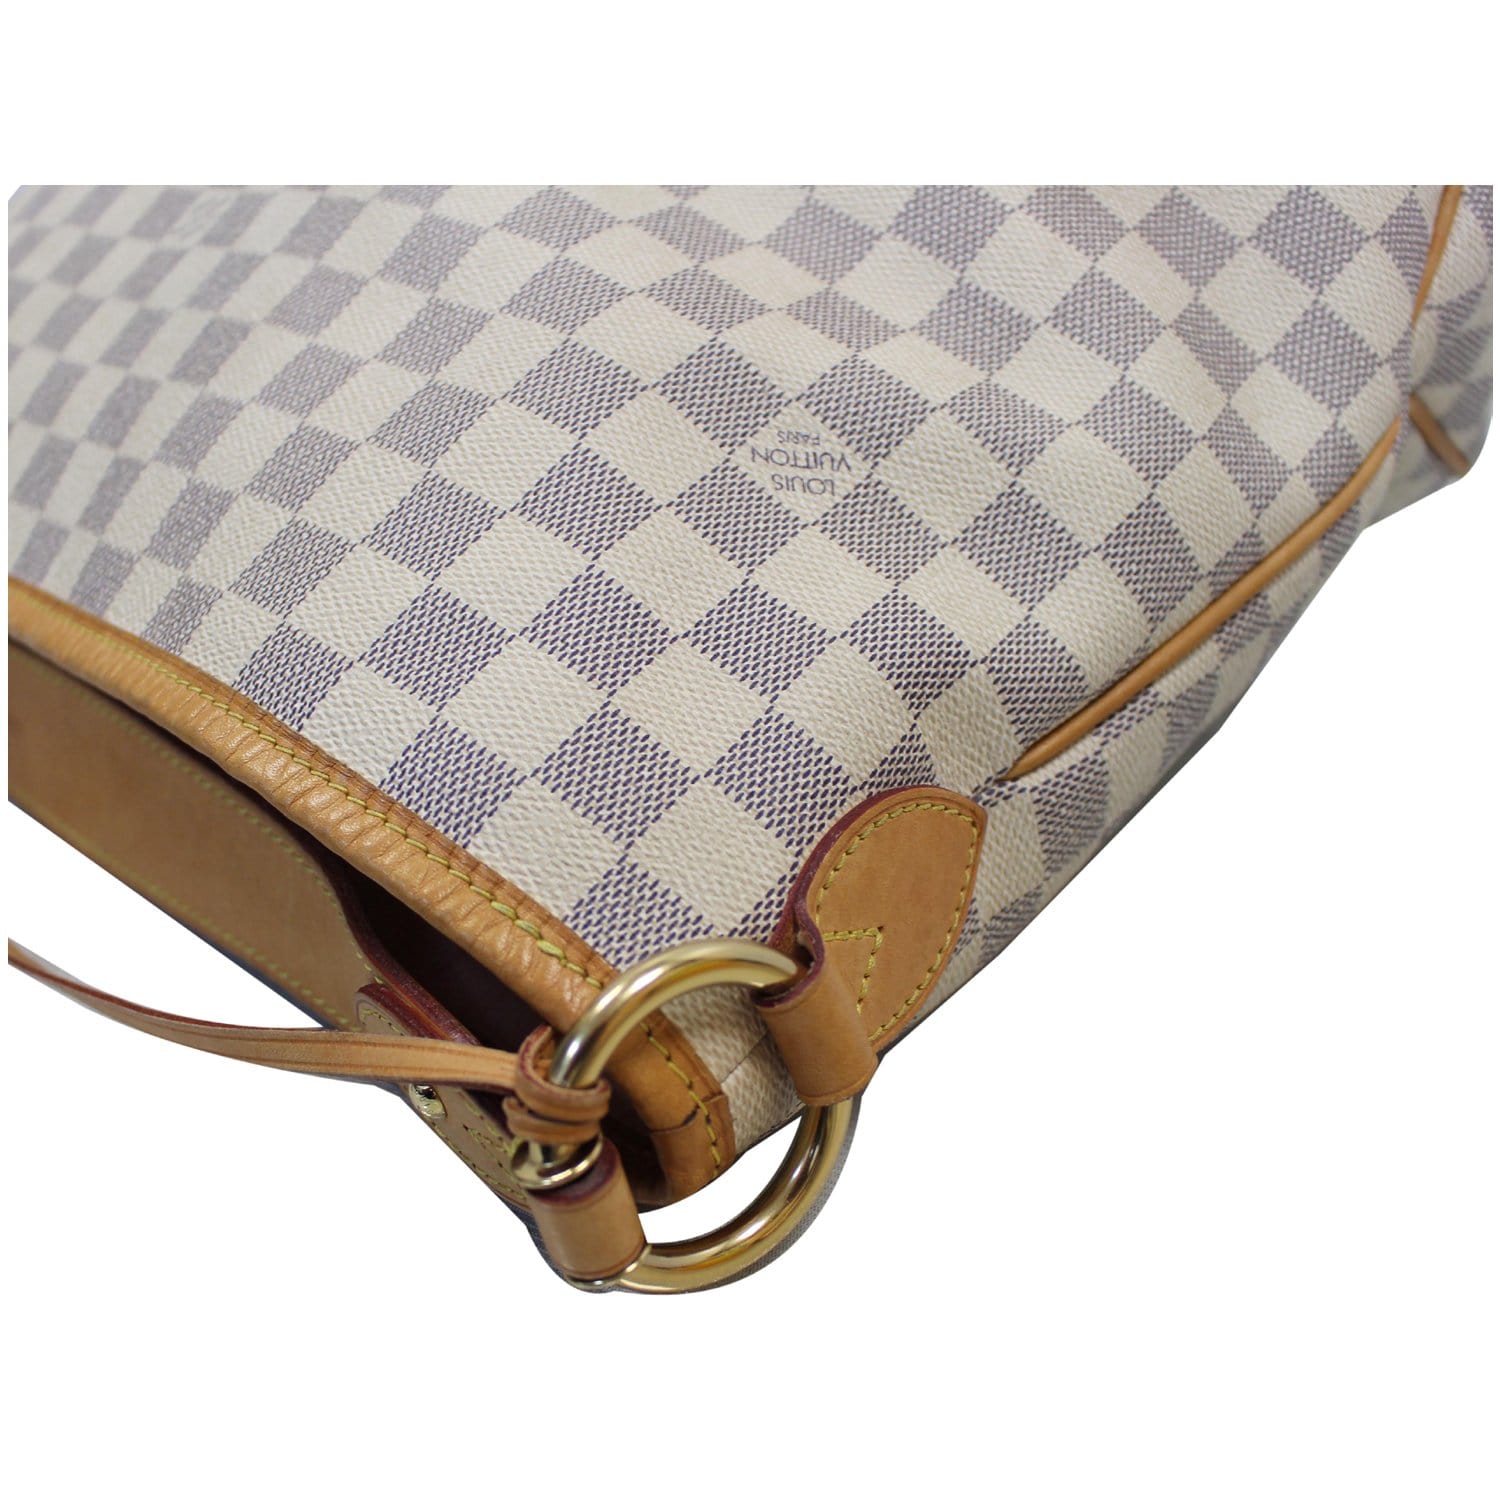 Louis Vuitton Damier Azur Delightful PM - Neutrals Totes, Handbags